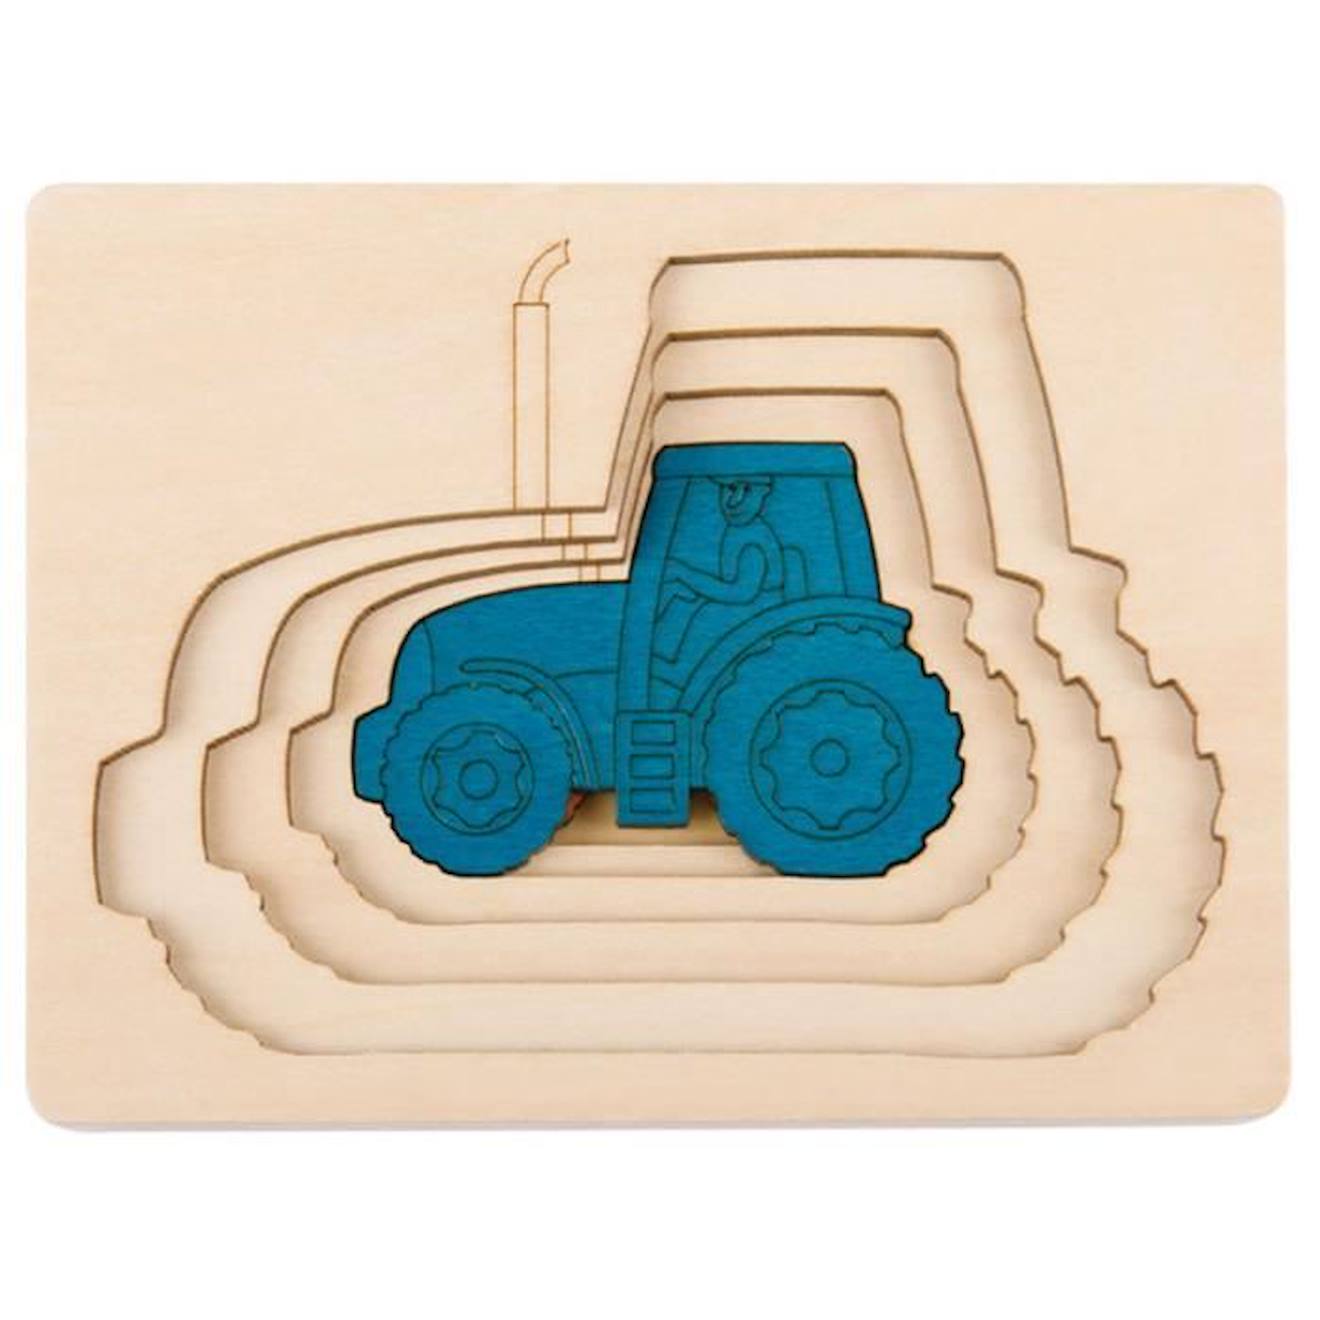 Puzzle 5 Tracteurs En 1 - Hape - George Luck - Moins De 100 Pièces - Beige Et Bleu - Scène De Vie Bl